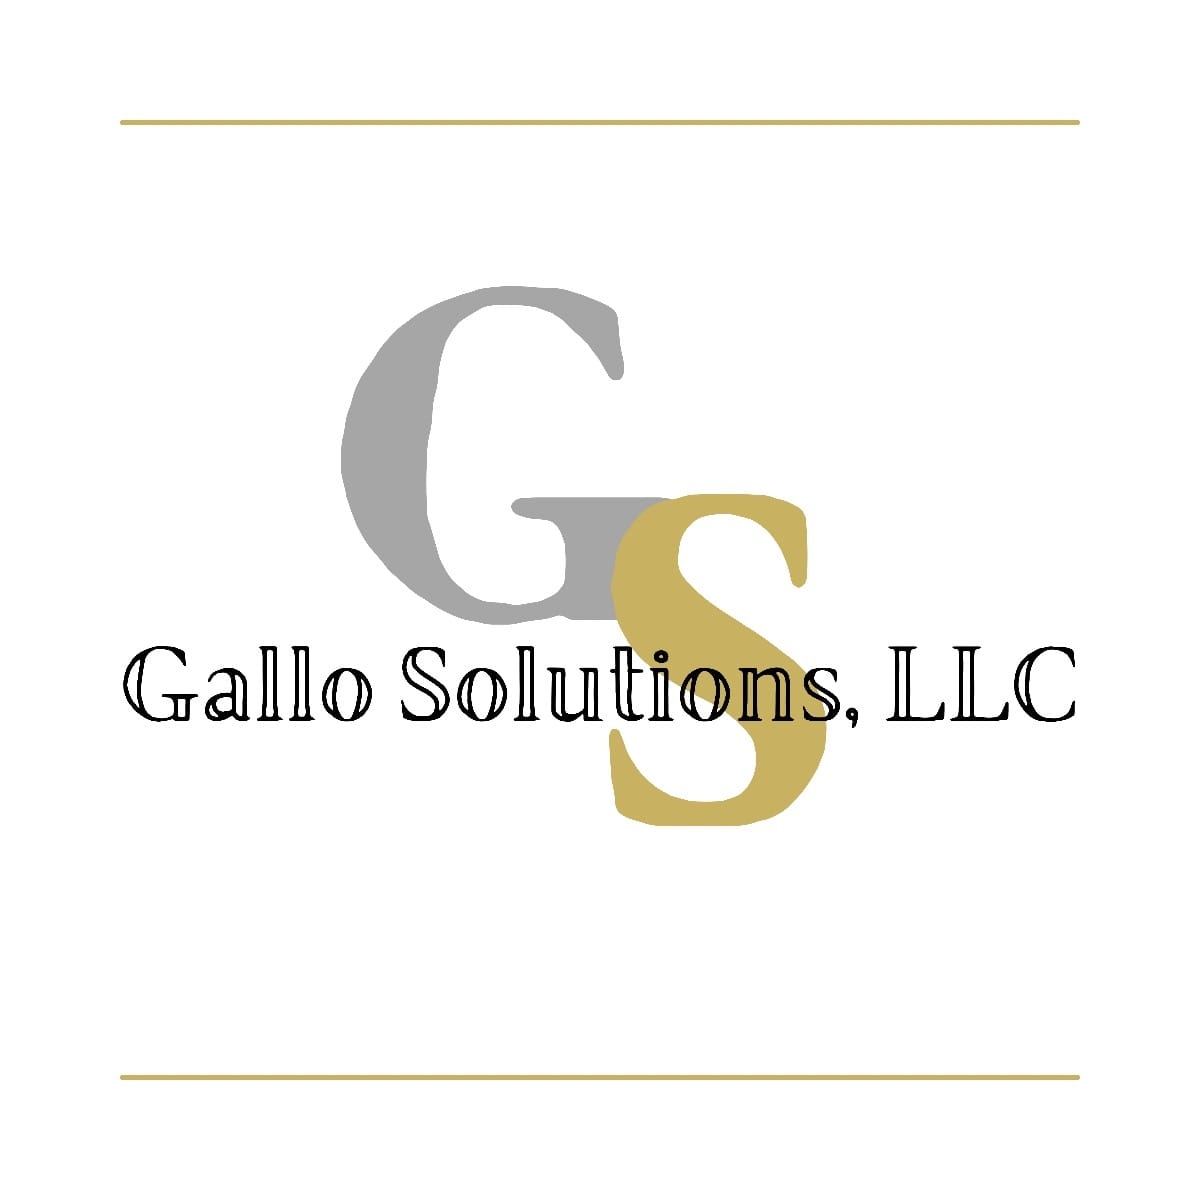 Gallo Solutions